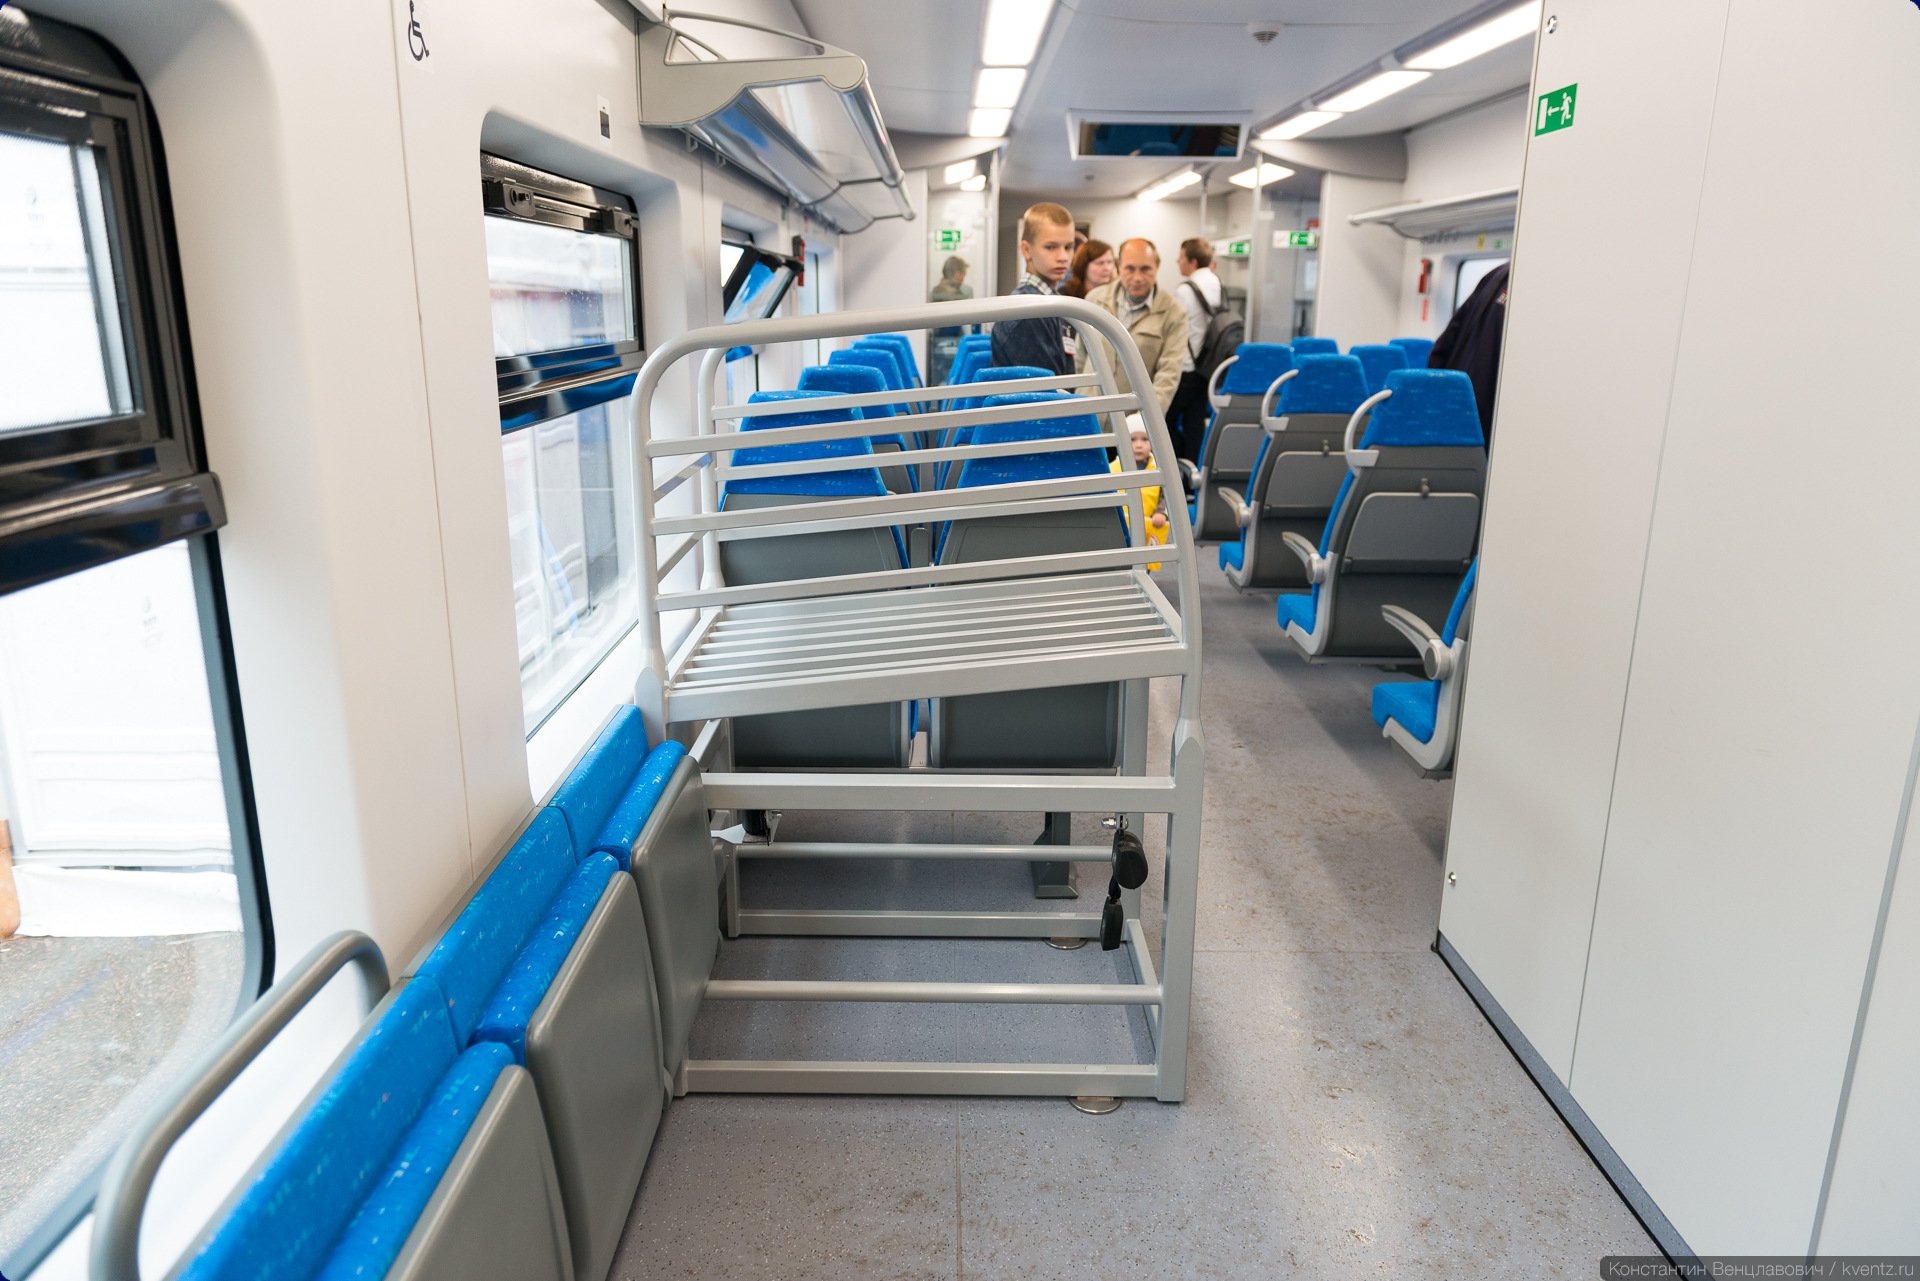 Купить места для инвалидов в поезде. Ласточка 7072 откидное. Откидные кресла в Ласточке. Ласточка места для инвалидов. Откидное место.